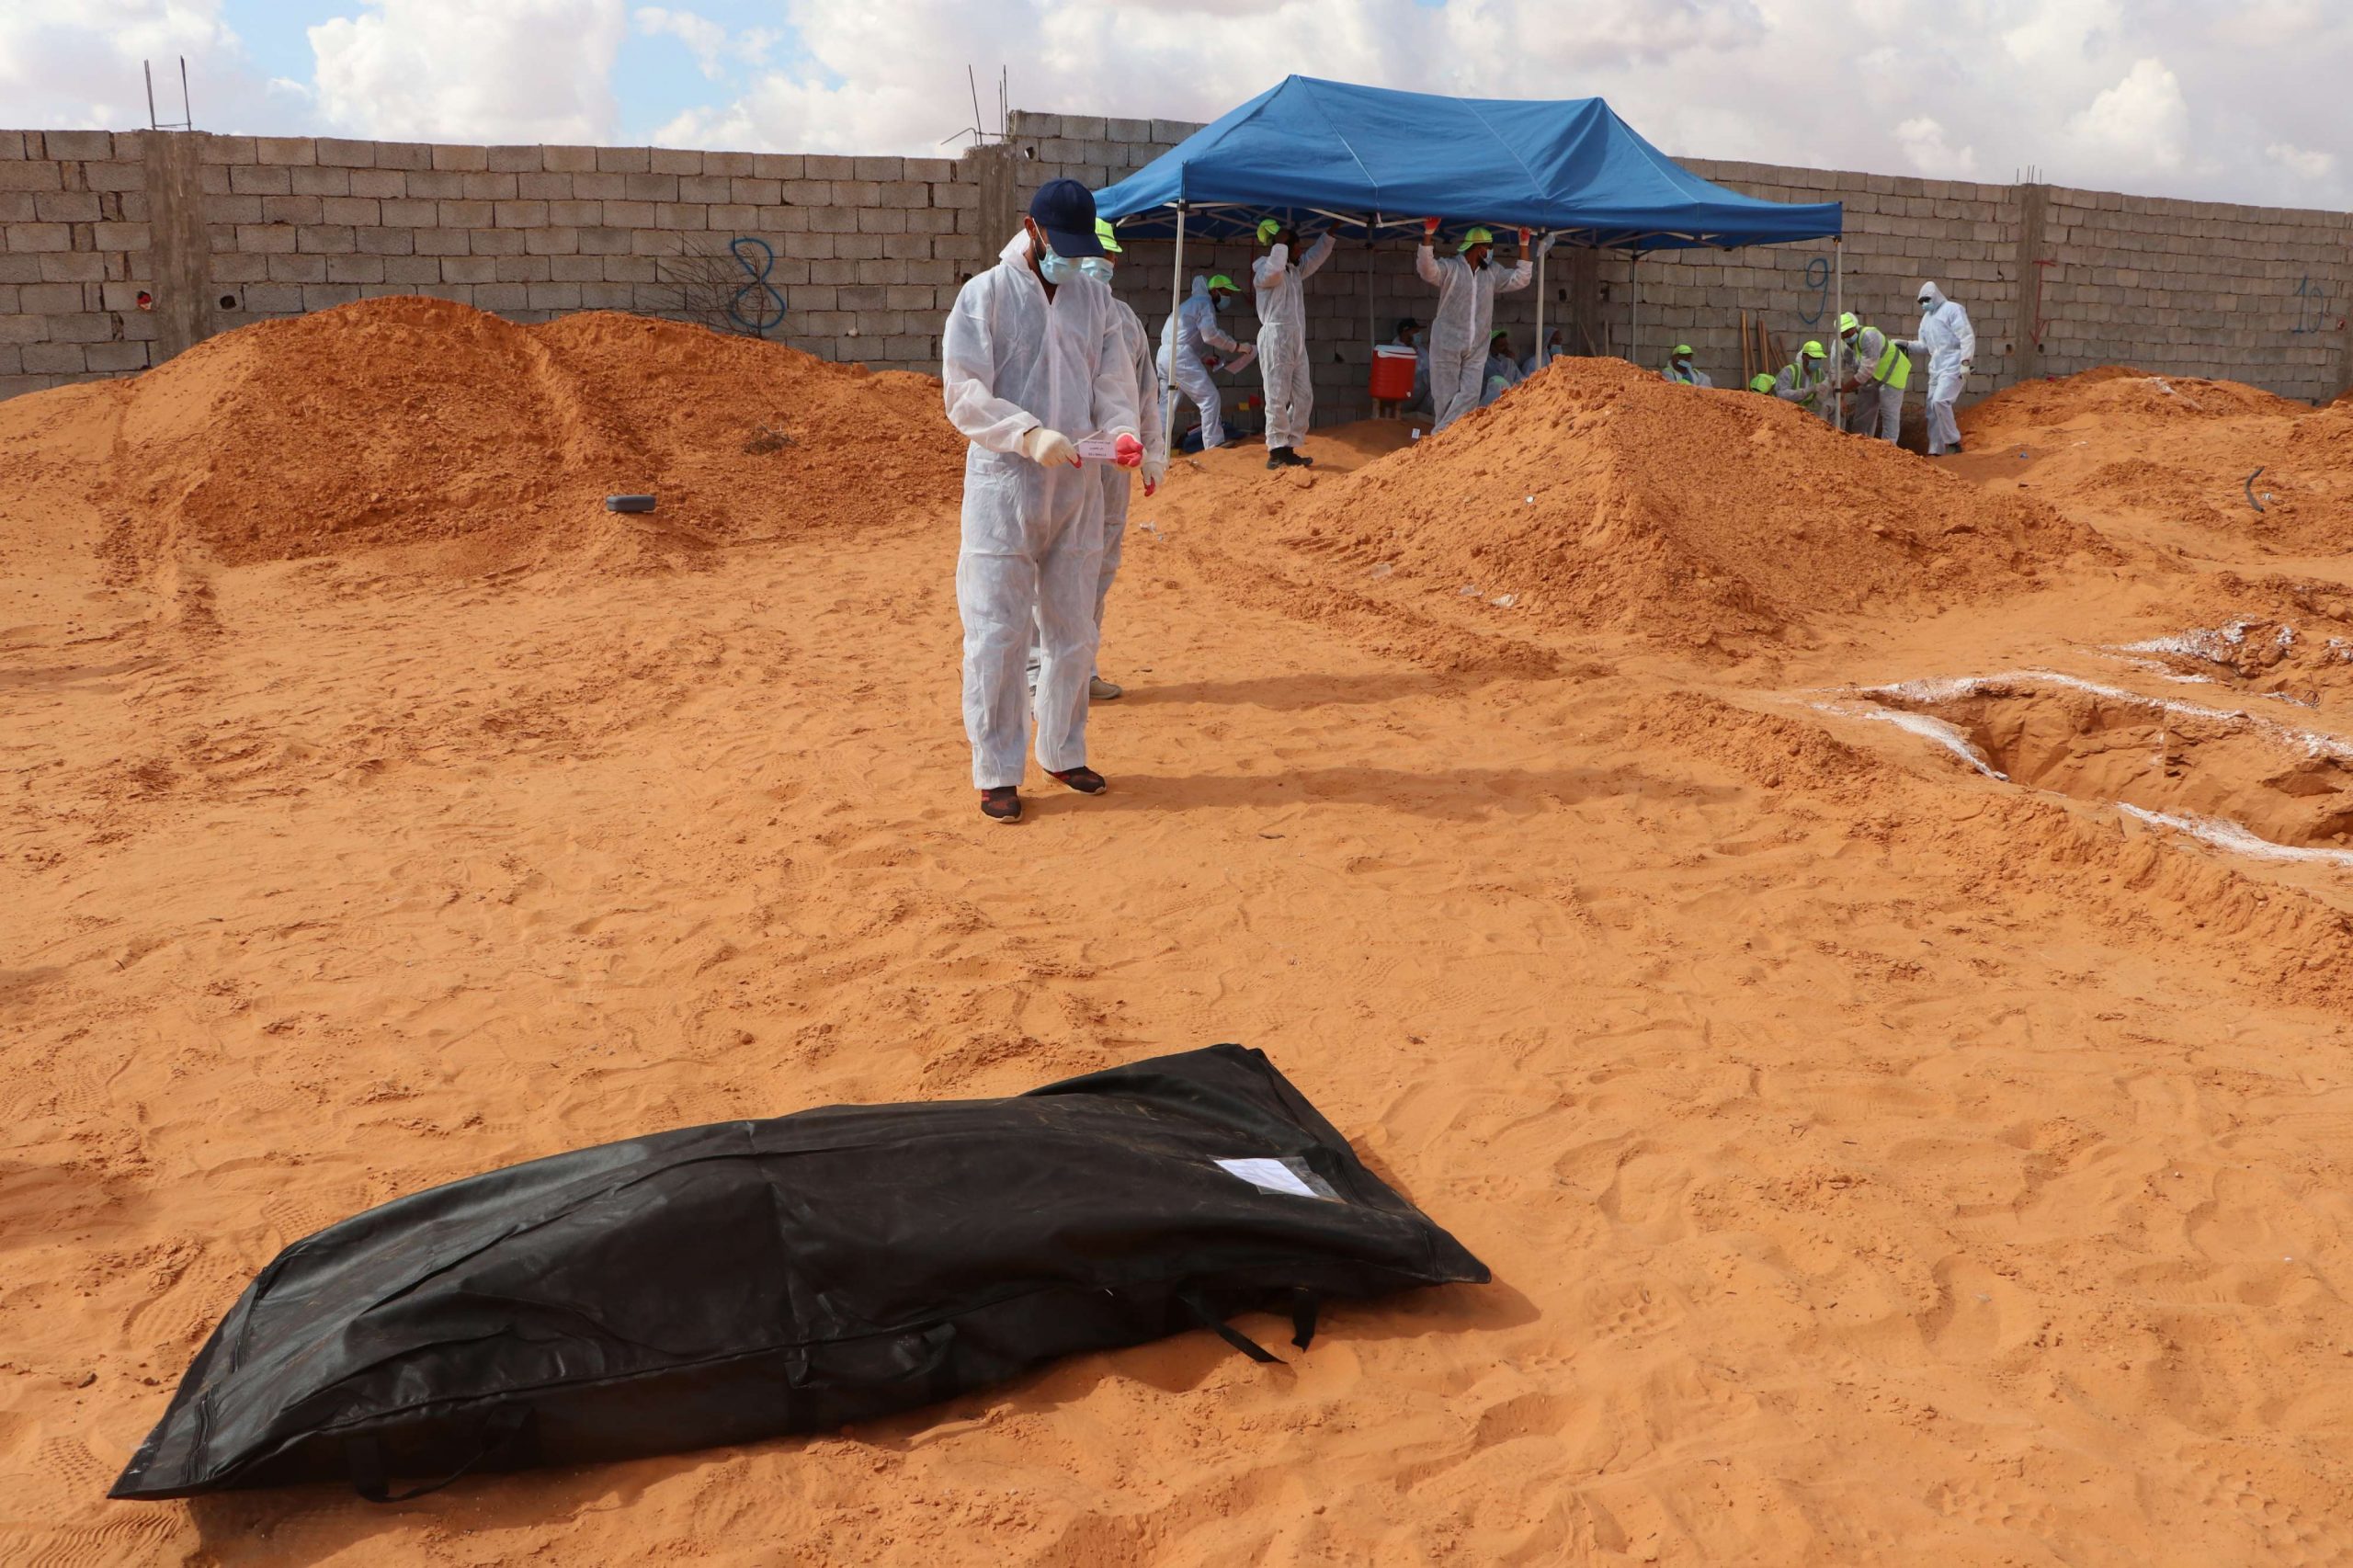 ليبيا .. العثور على 5 جثث مجهولة الهوية في مقبرتين جماعيتين بمدينة ترهونة